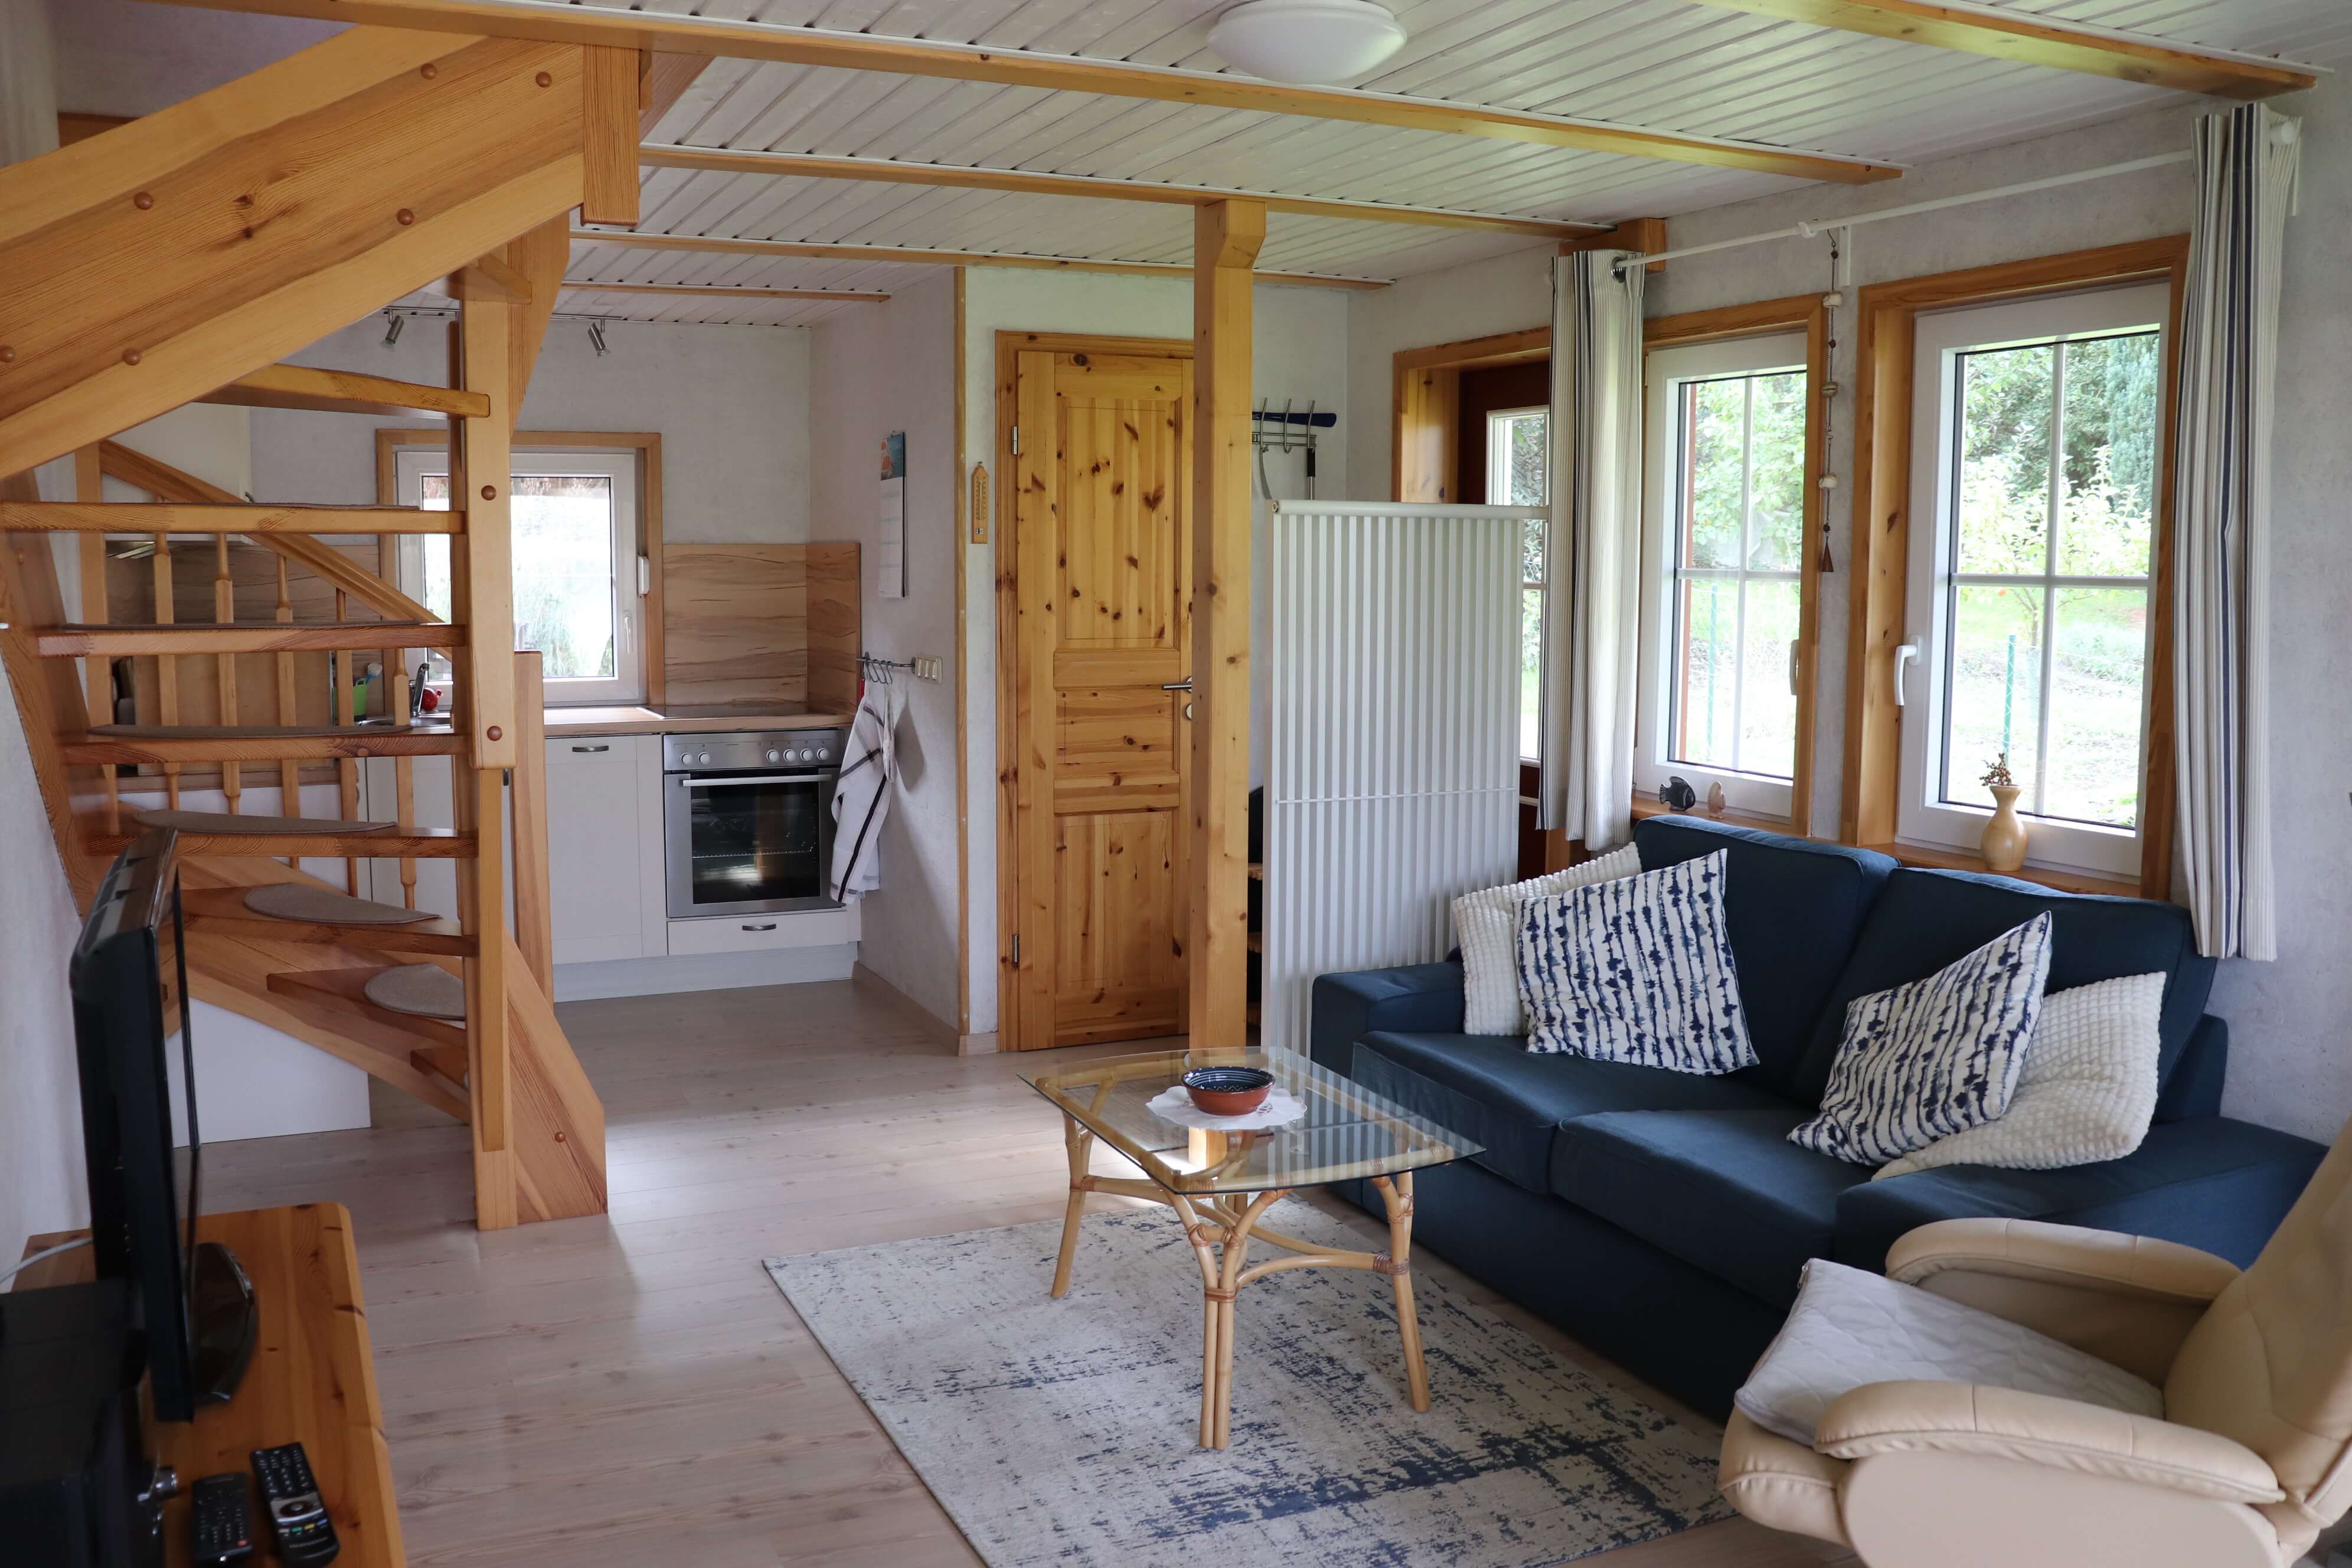 Blick auf eine blaue Couch und einem Holztisch im Inneren des kleinen Ferienhauses der Familie Ohde.